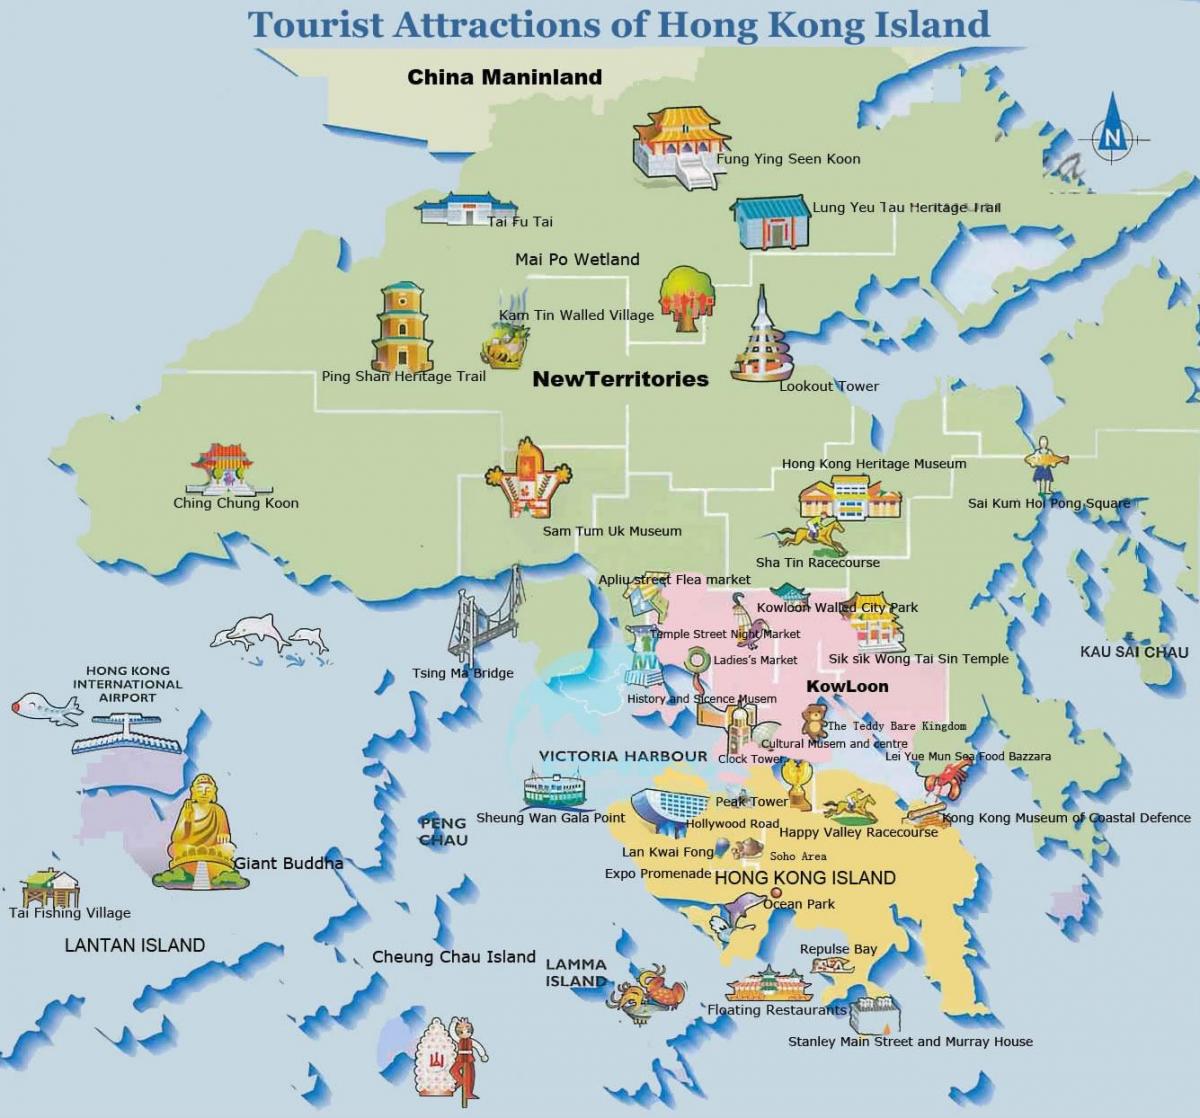 نقشه سیاحتی و گردشگری هنگ کنگ